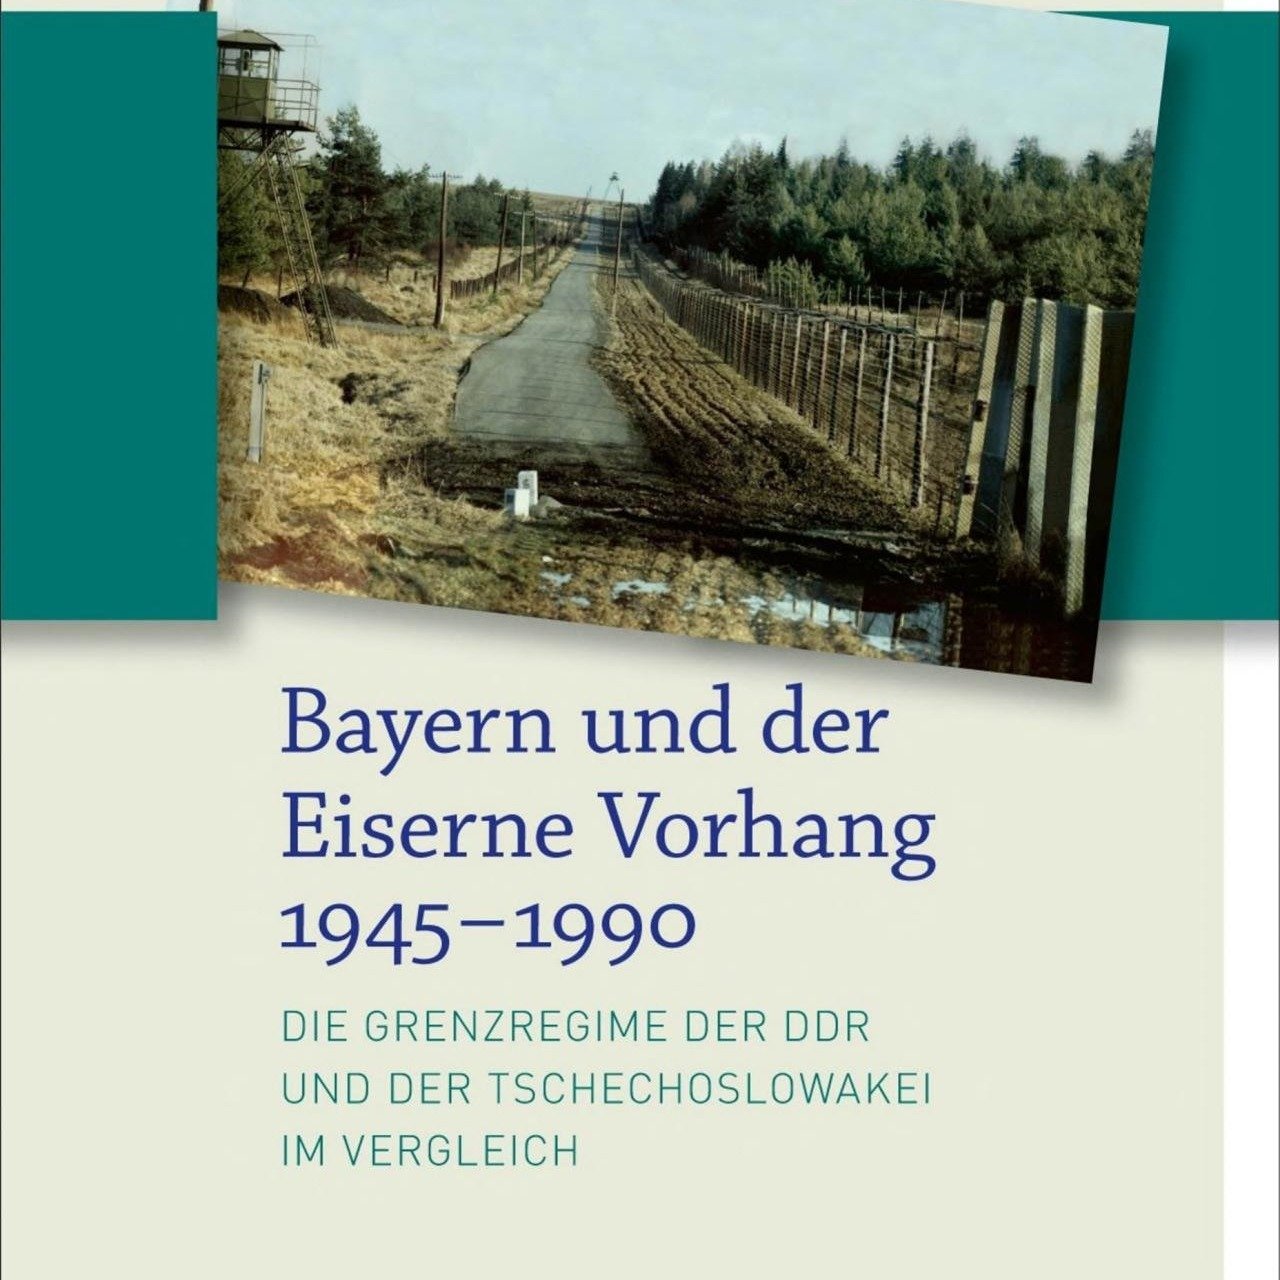 Markus Alexander Meinke: "Bayern und der Eiserne Vorhang 1945-1990"